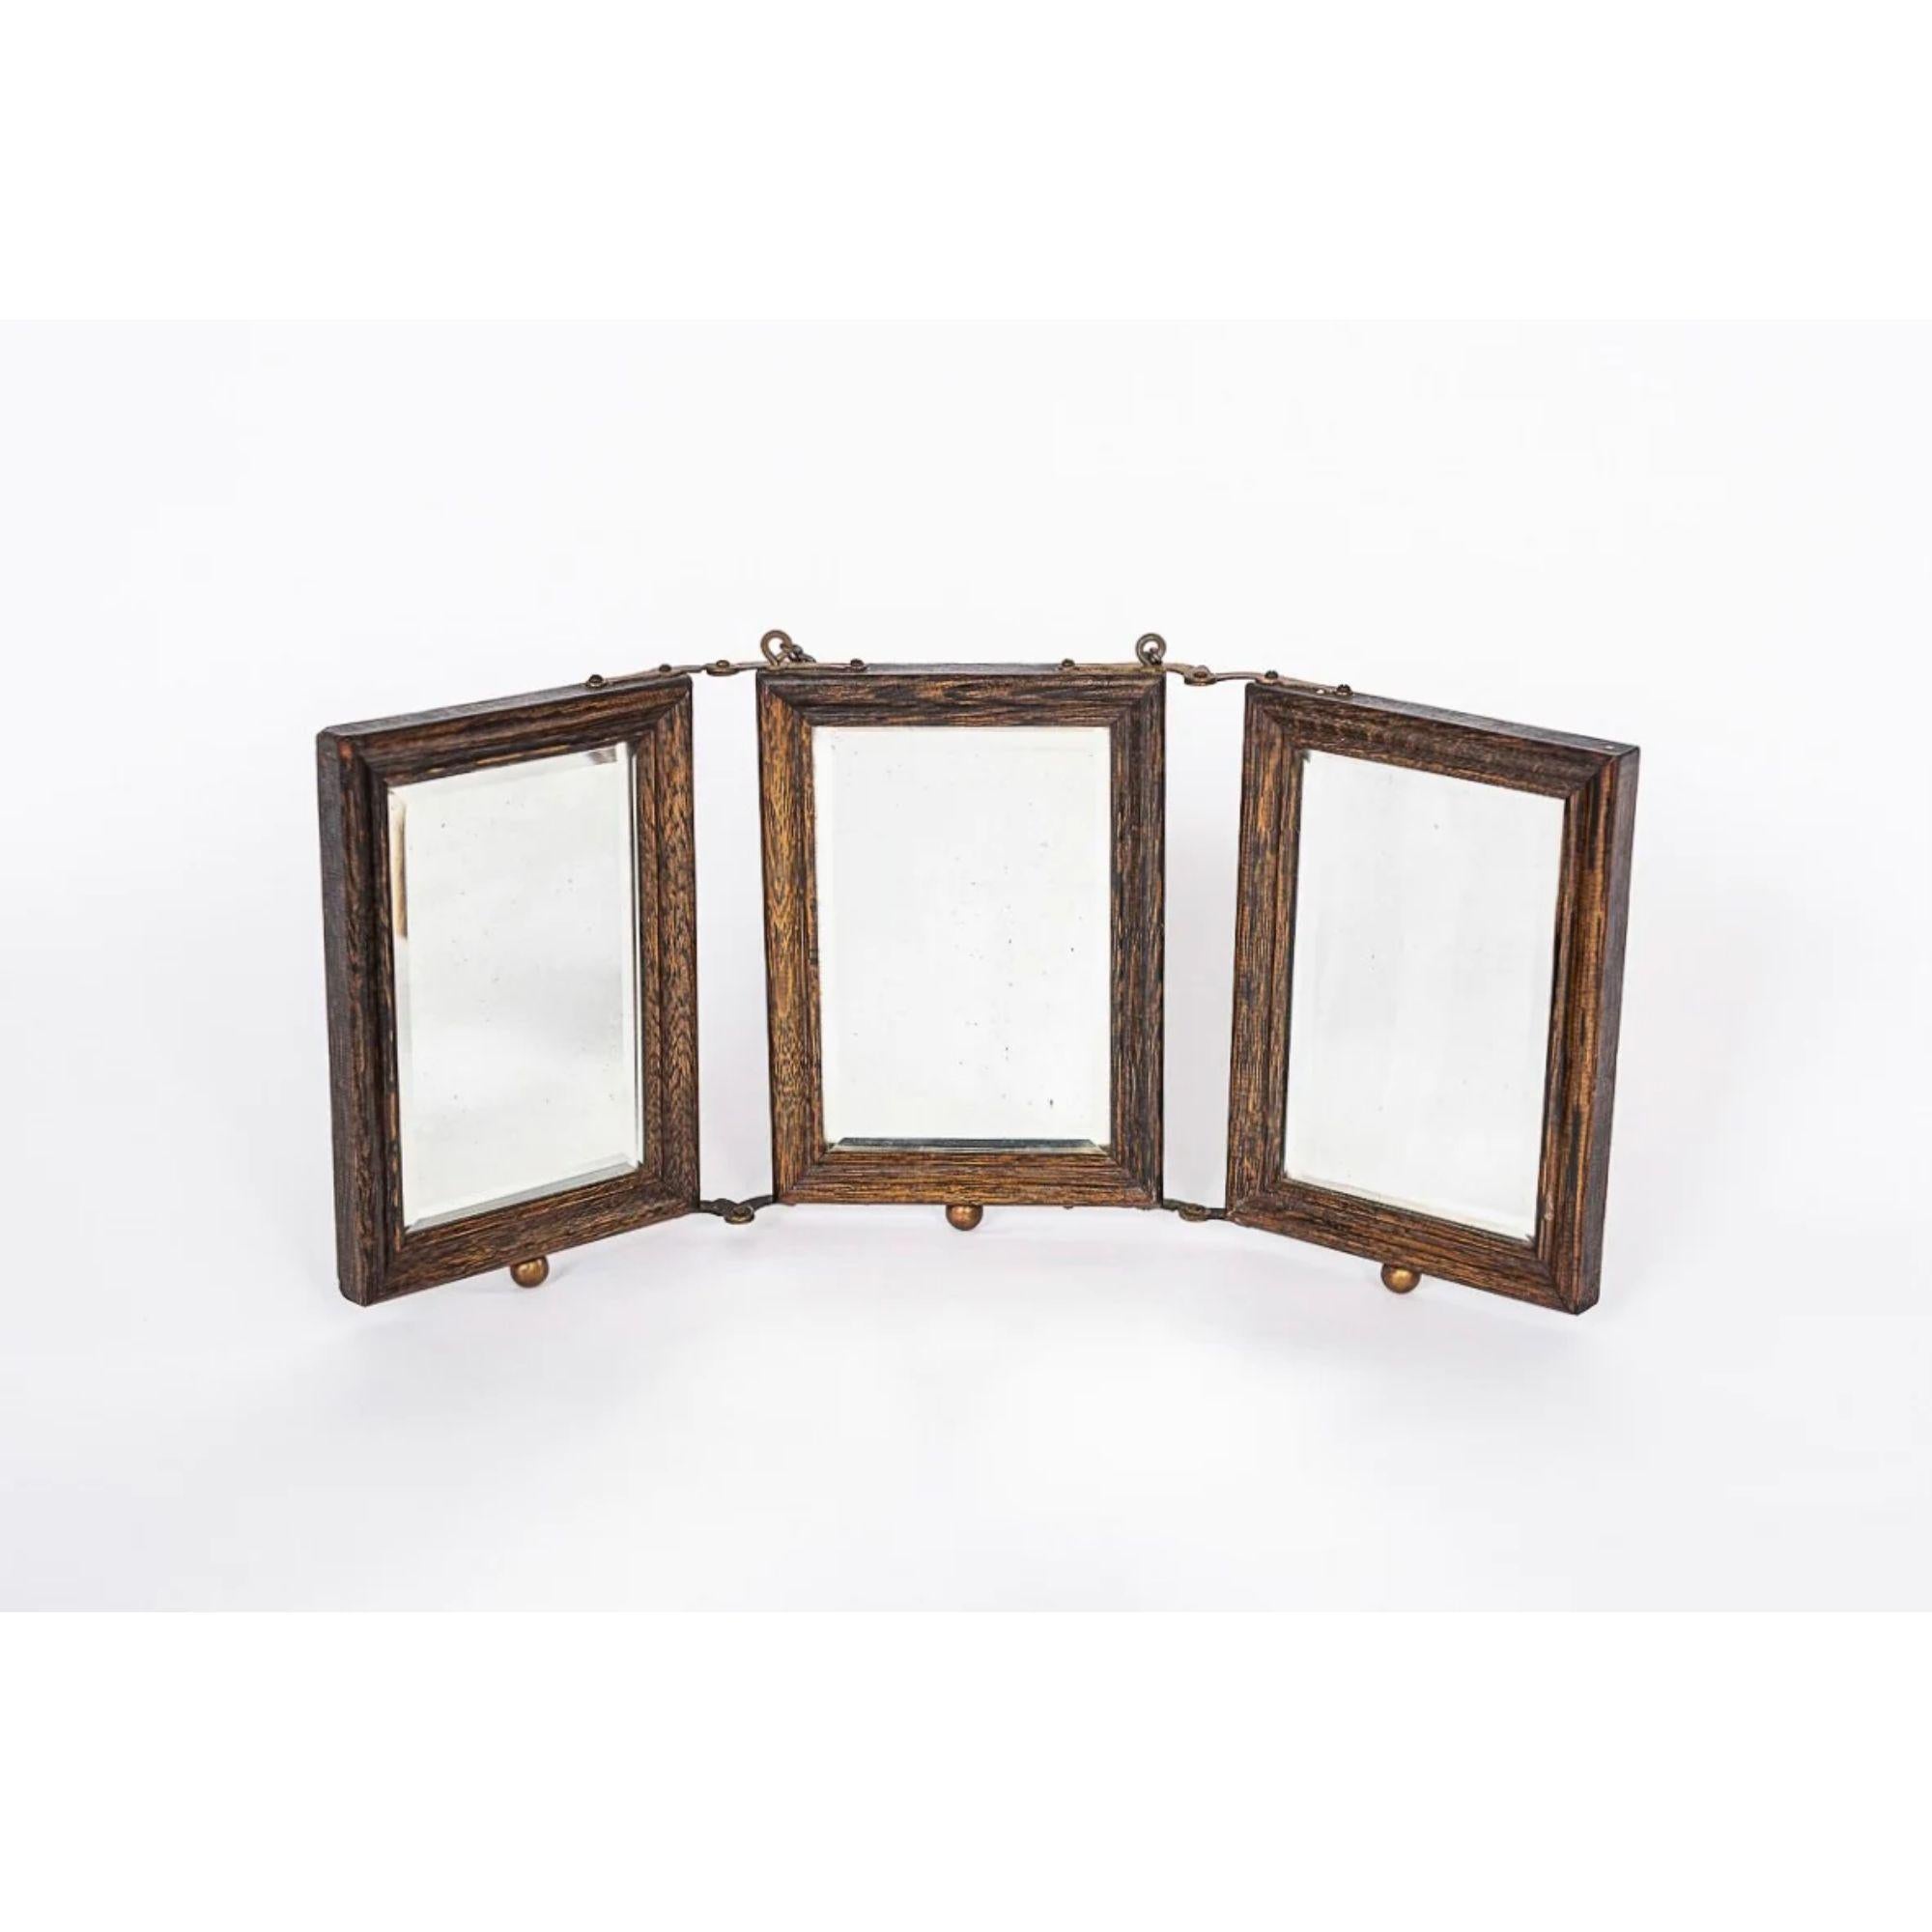 Diese außergewöhnliche antike viktorianische Barbier Rasier-oder Reise-Spiegel circa 1910 hat drei abgeschrägte Spiegel in einem schönen Eichenholz Rahmen mit geprägten industriellen Messing-Verzierungen und genietet Scharniere gesetzt. Diese